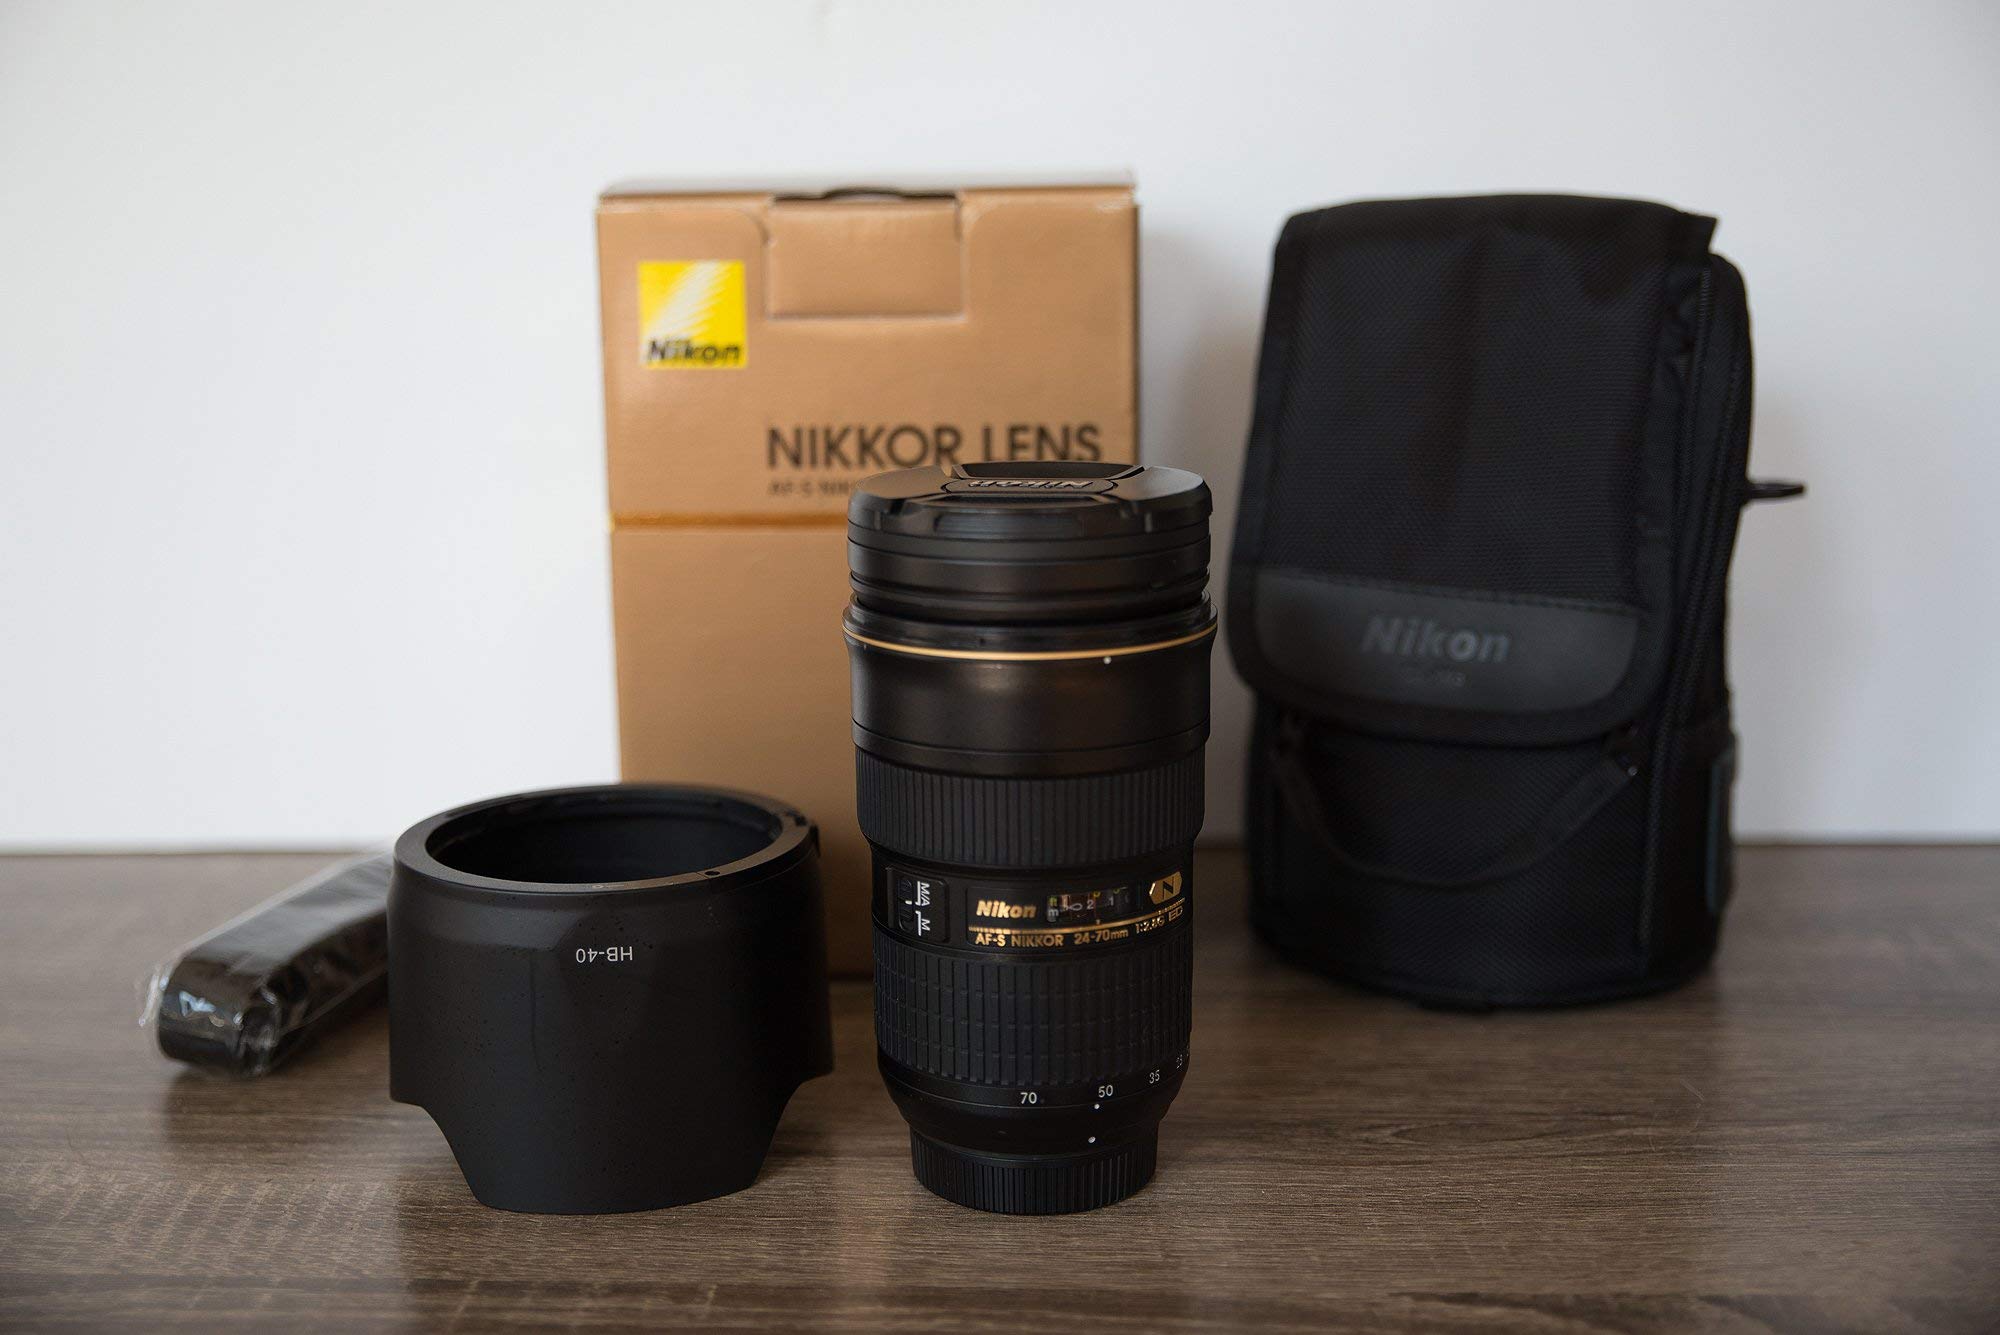 Nikon AF-S fx NIKKOR 24-70mm F/2.8G ED Zoom Lens Auto Focus DSLR Cameras International Version (No Warranty) - Used